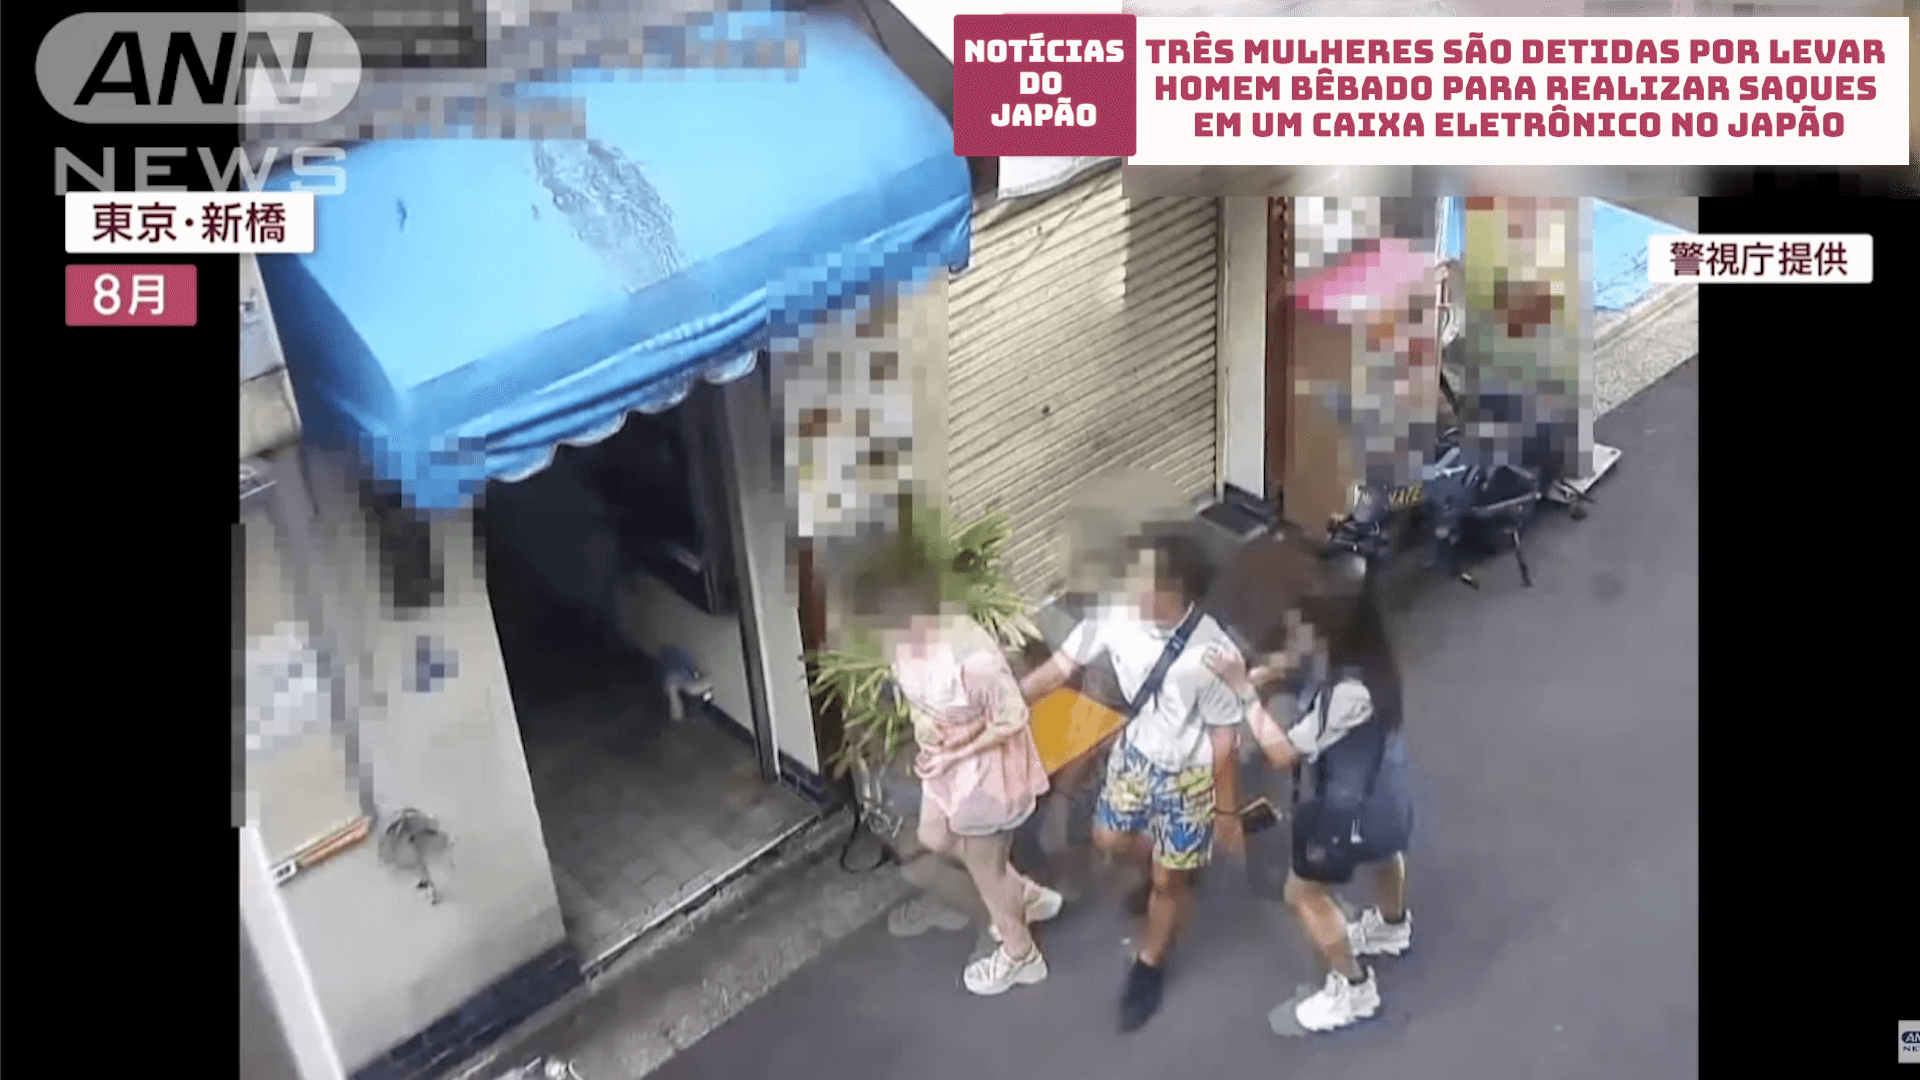 Três mulheres são detidas por levar homem bêbado para realizar saques em um caixa eletrônico no Japão 